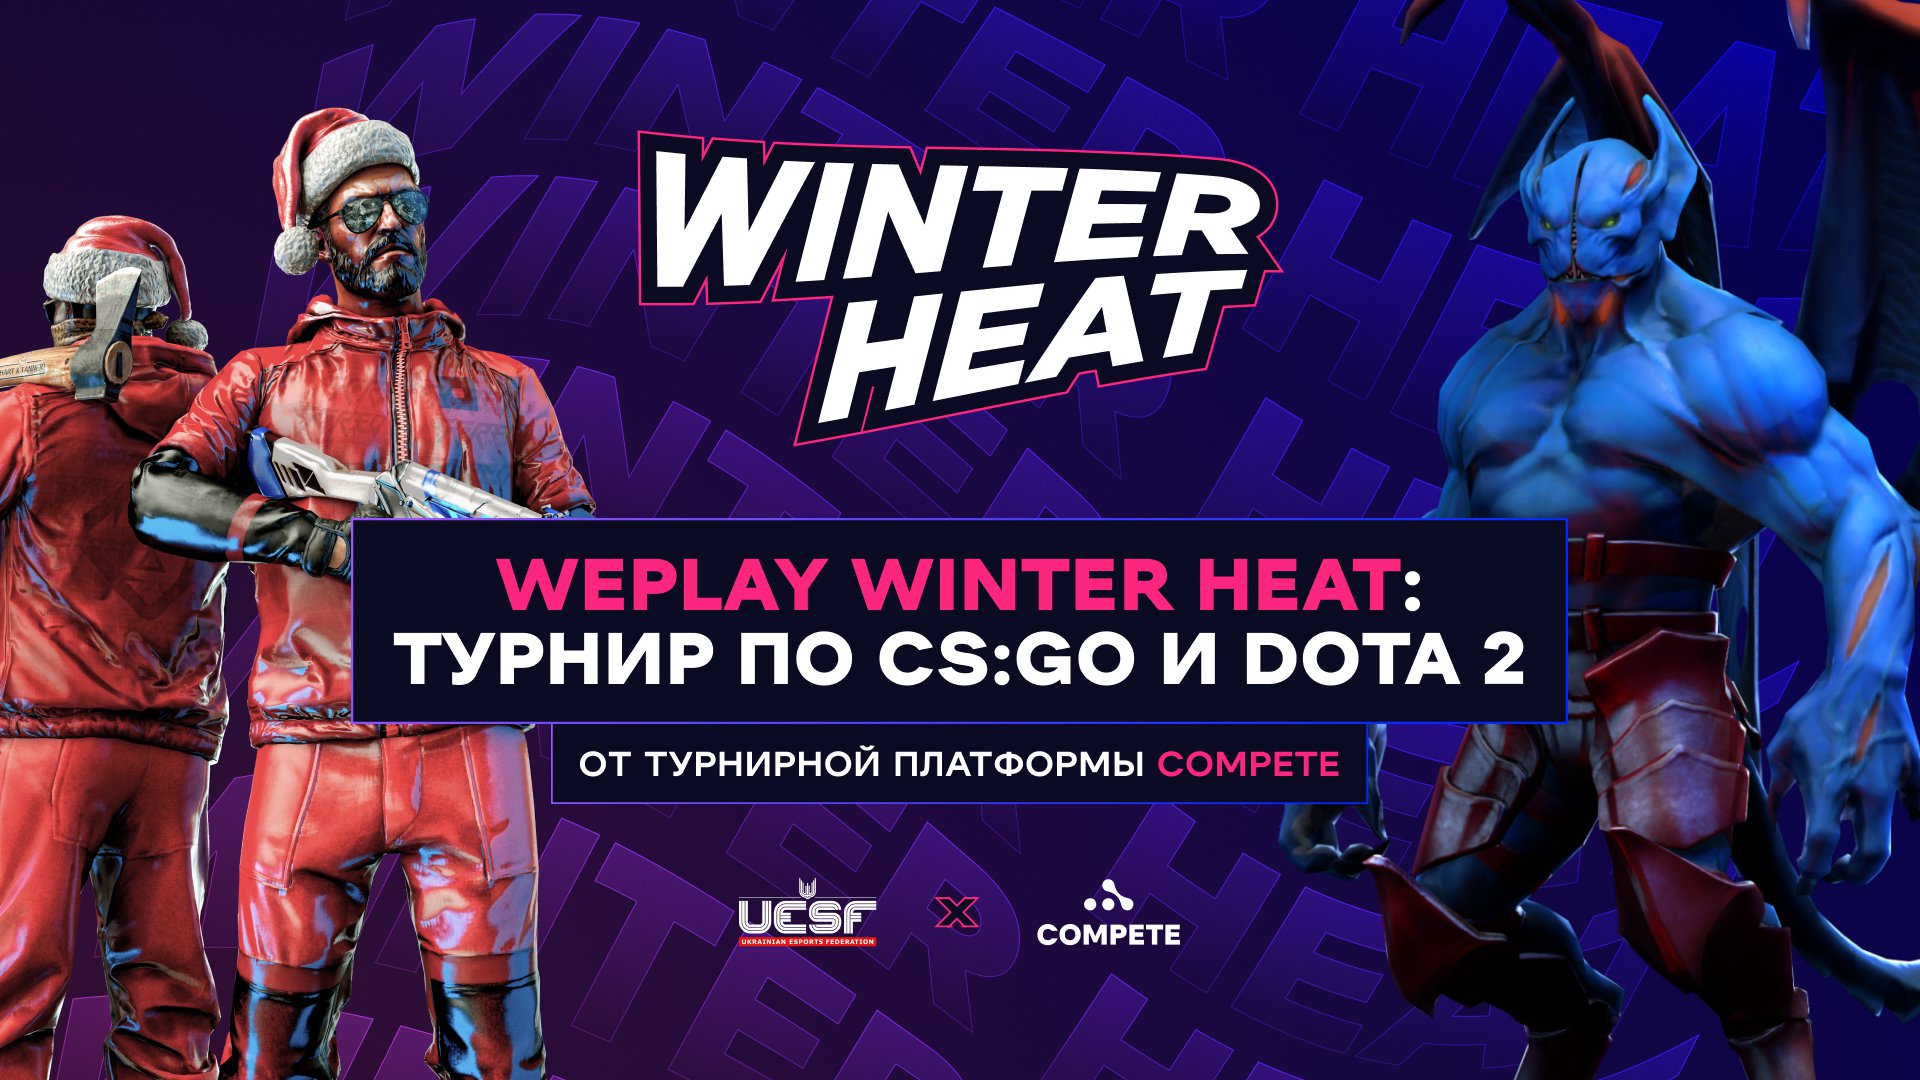 Турнирная платформа Compete провела турнир WePlay Winter Heat при поддержке UESF